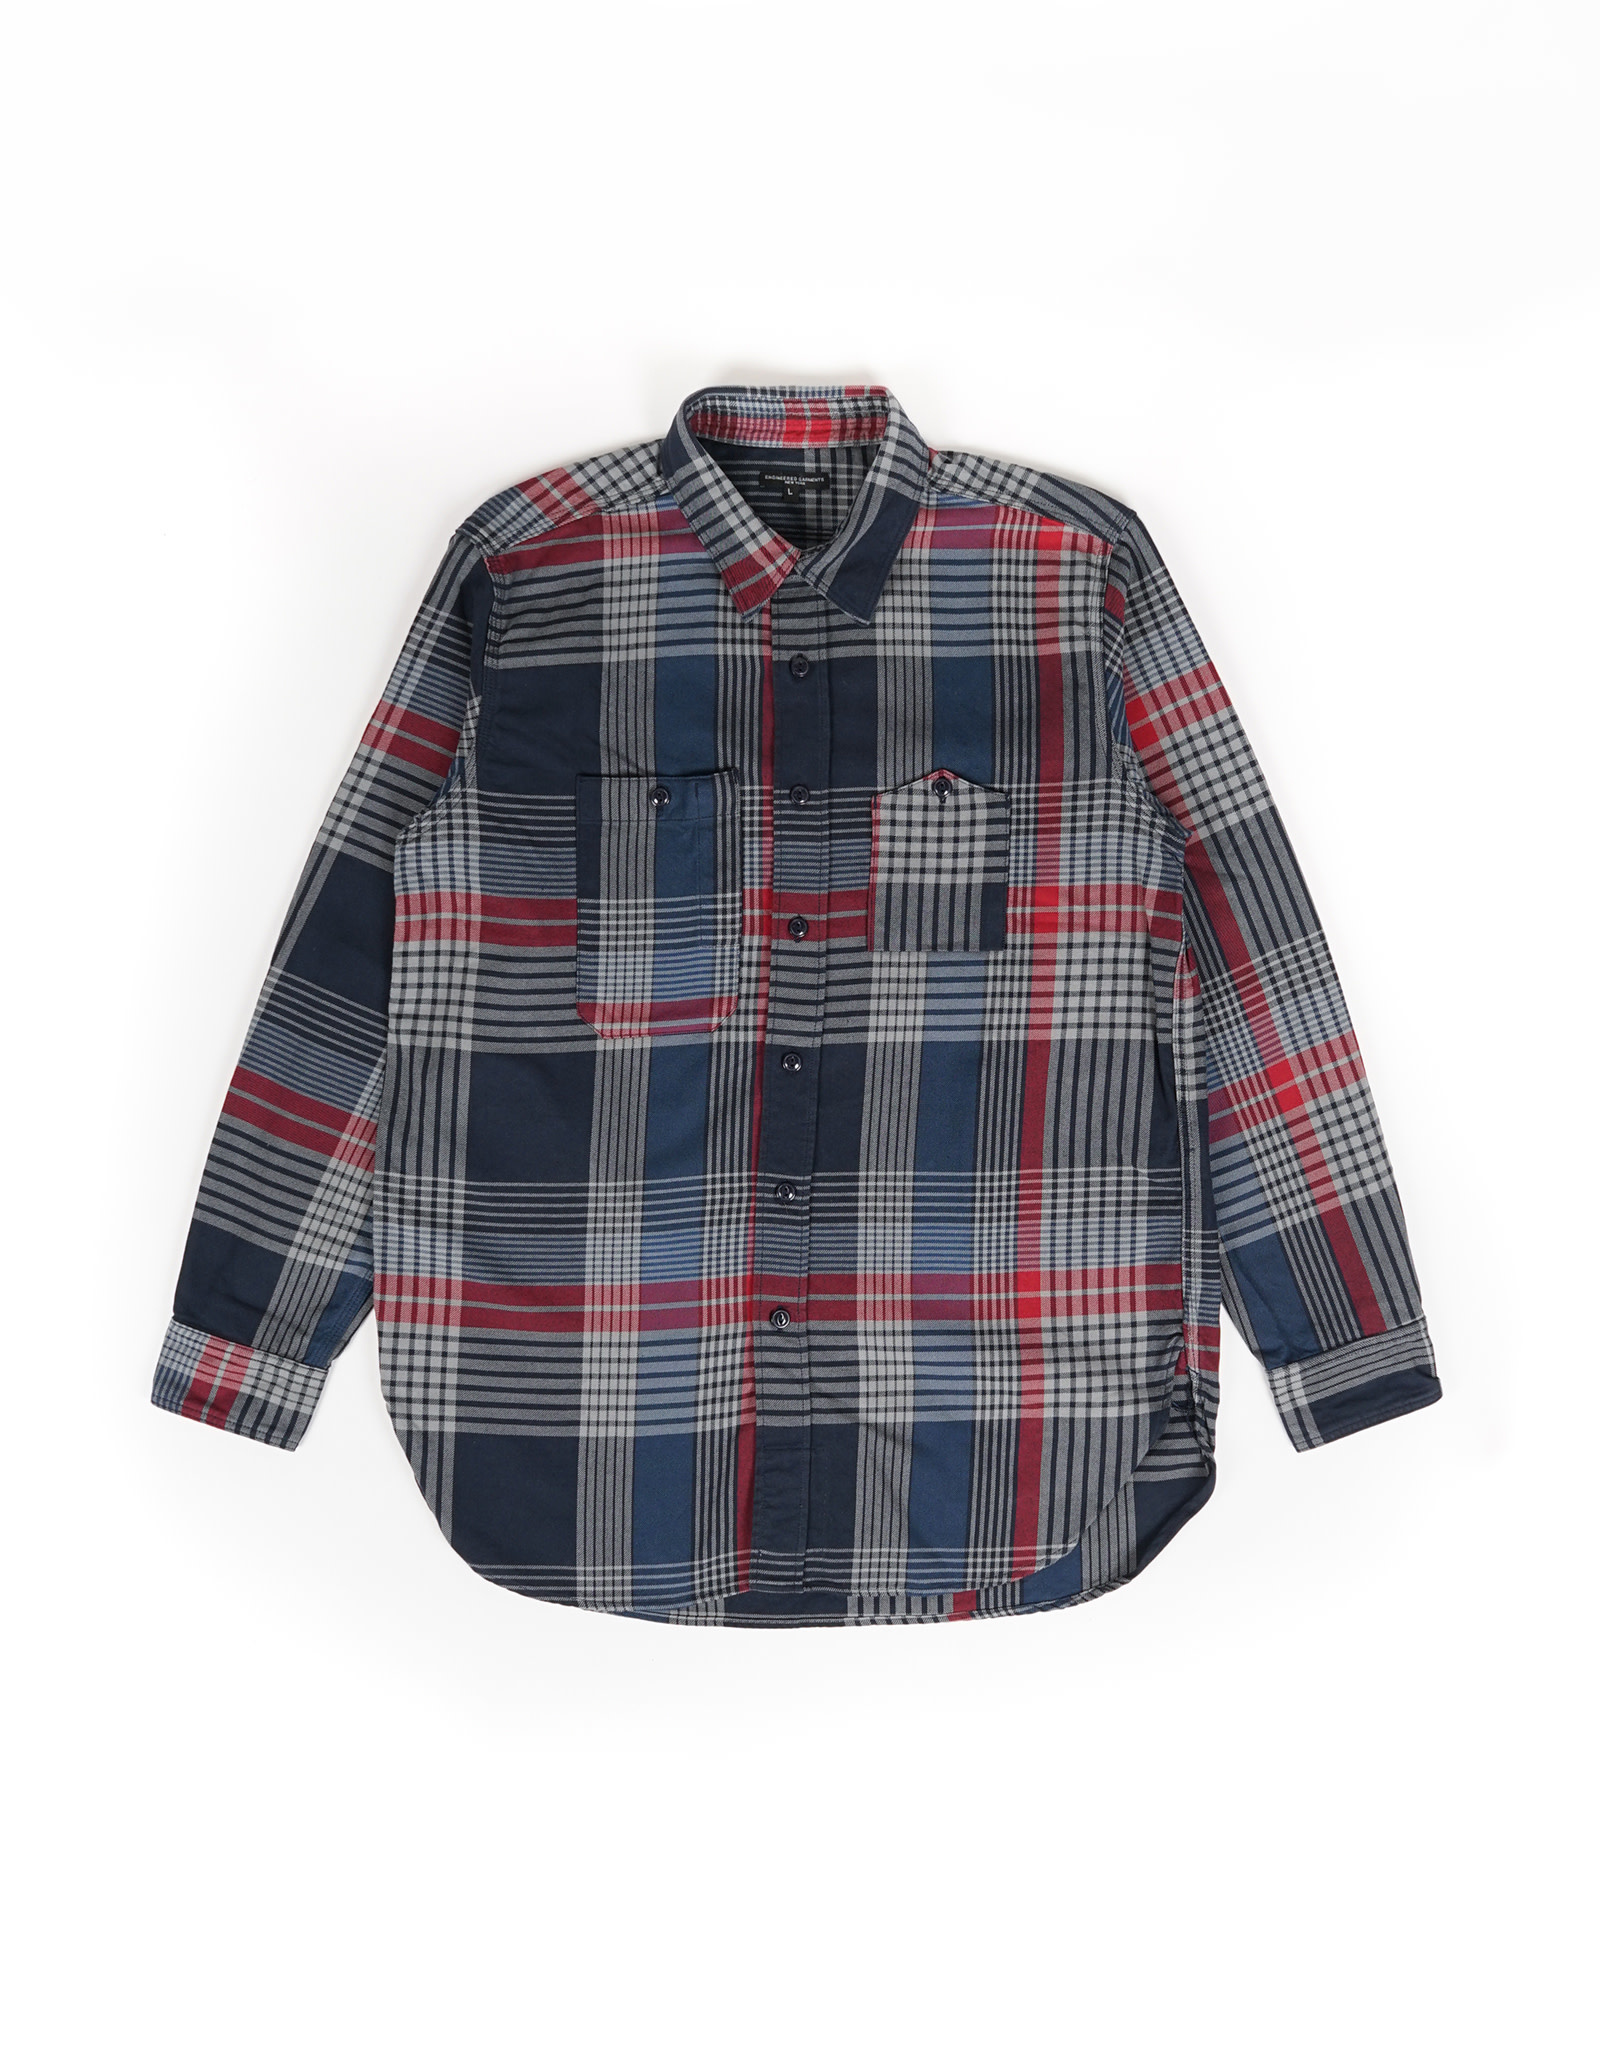 EG Work Shirt Navy/Grey/Red Cotton Twill (ES021)